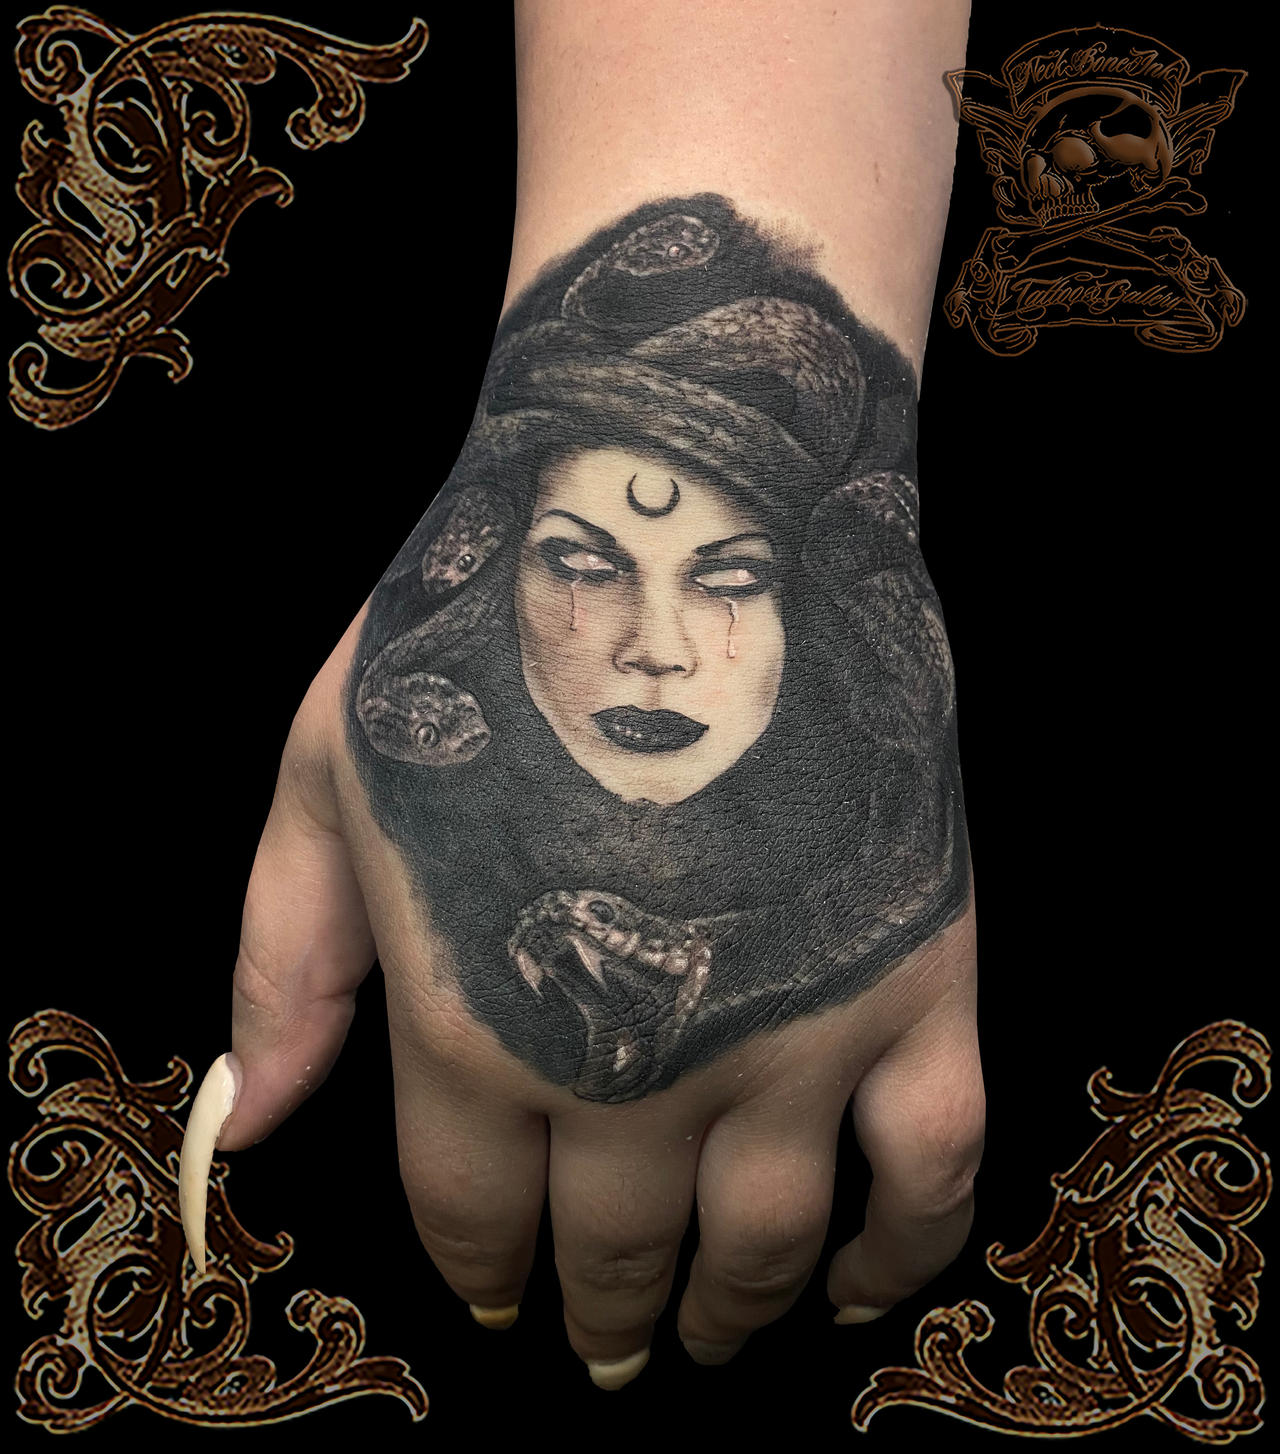 Medusa-hand-tattoo by NeckBoneInkTattoo on DeviantArt